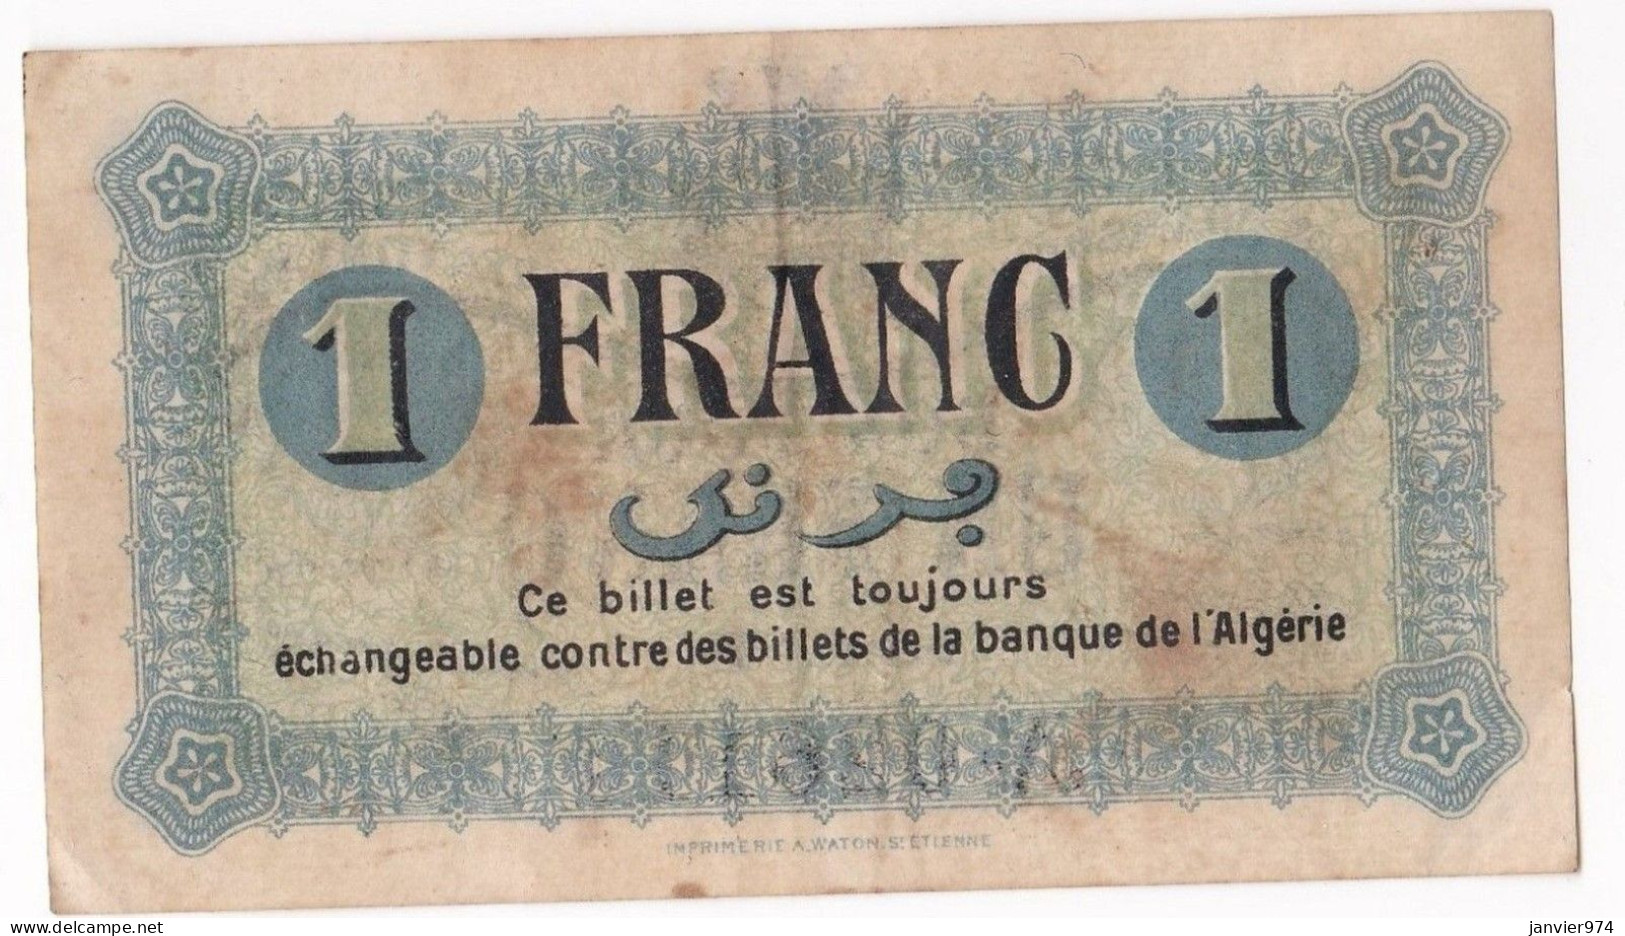 Algerie Constantine .Chambre De Commerce. 1 Franc 1 Mai 1945 Serie B N° 026110, Billet Colonial Circulé - Algerije